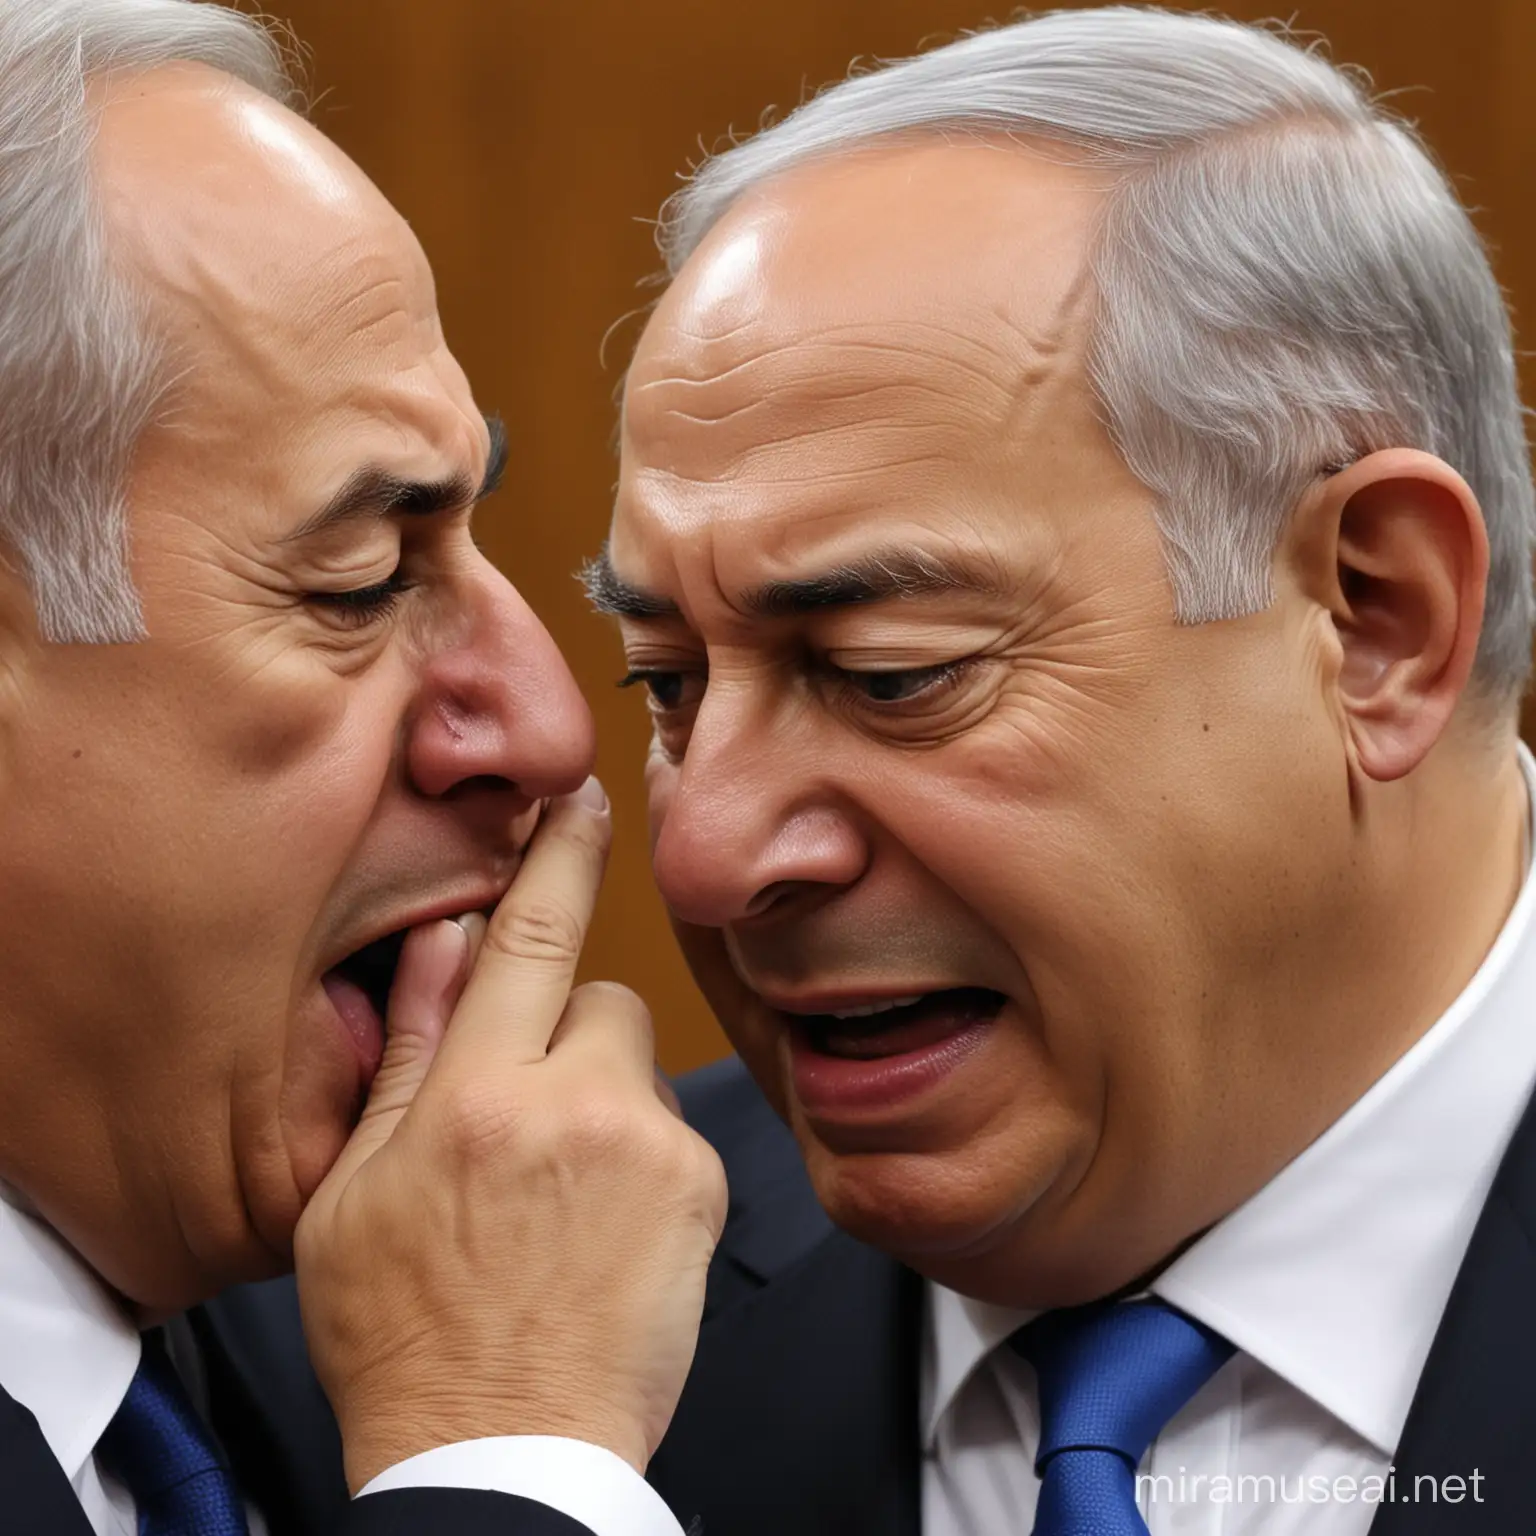 Israeli Prime Minister Benjamin Netanyahu in Emotional Distress